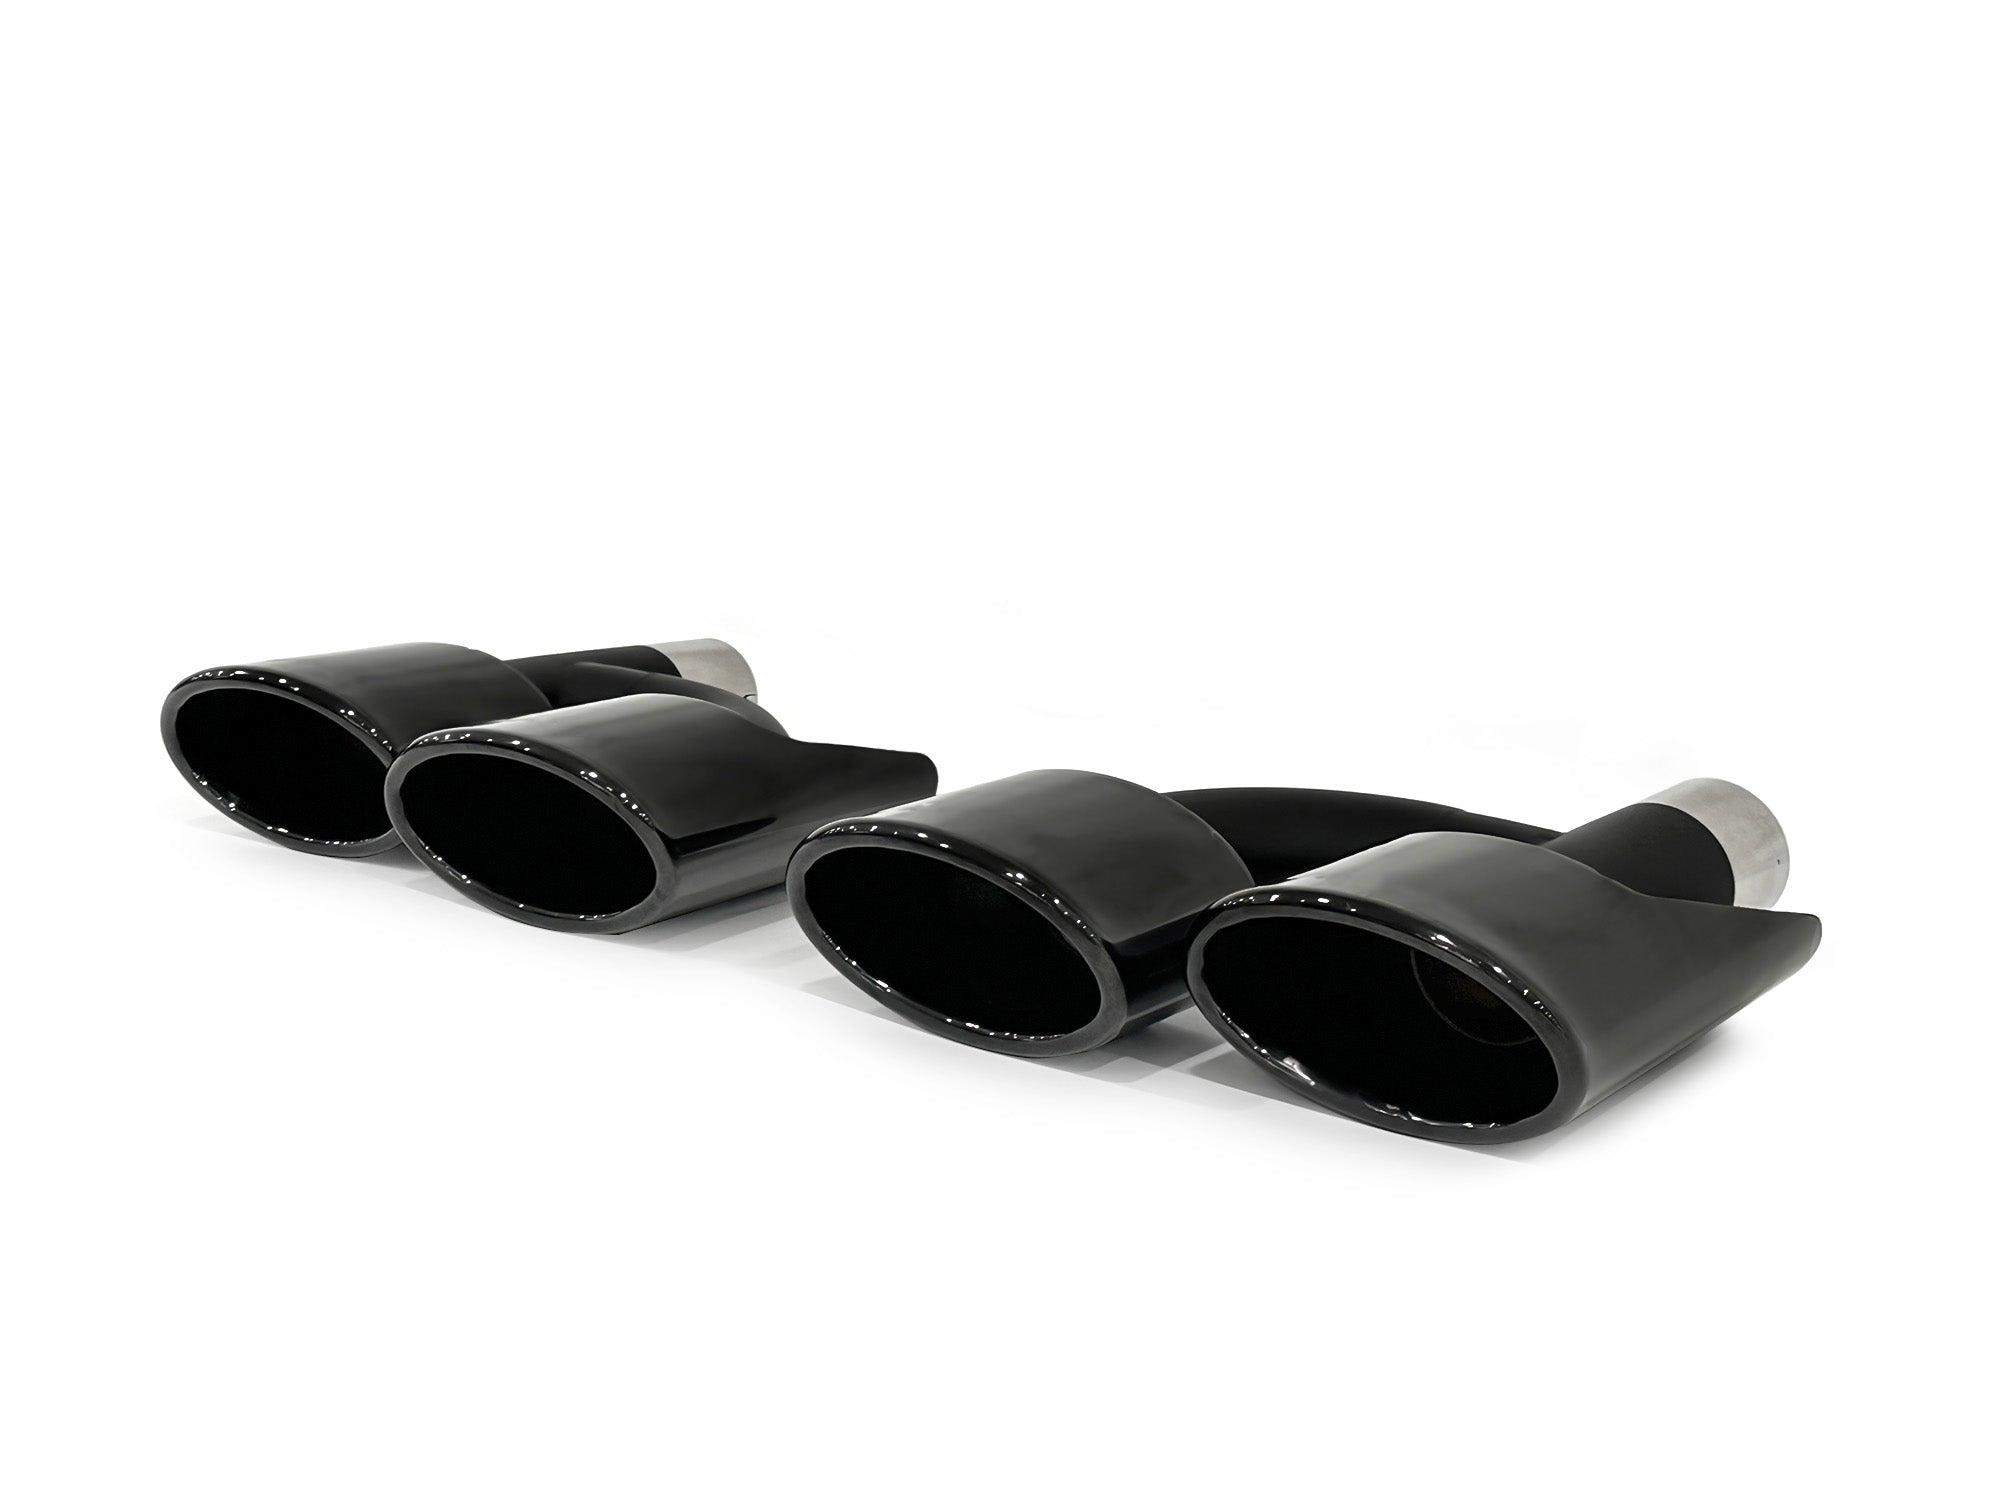 Schwarz Doppel-Auspuff Auspuffblenden Auspuff Endrohr für Mercedes Benz W221 W211 W204 C218 R171 et250